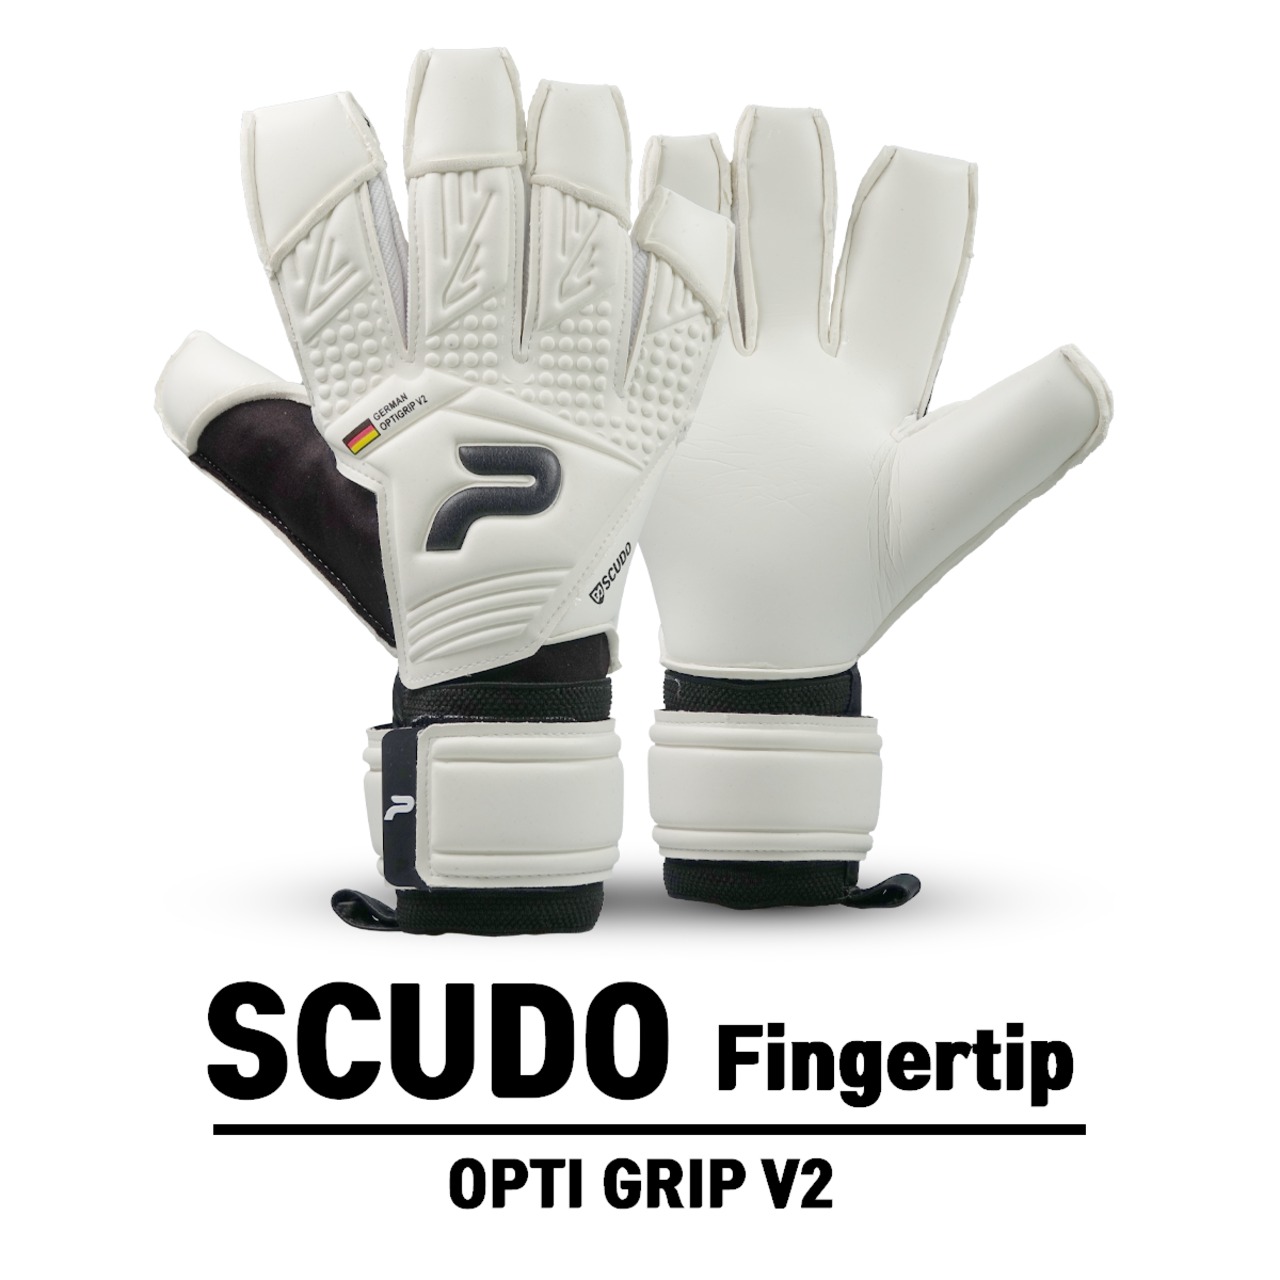 SCUDO Fingertip OPTI GRIP V2